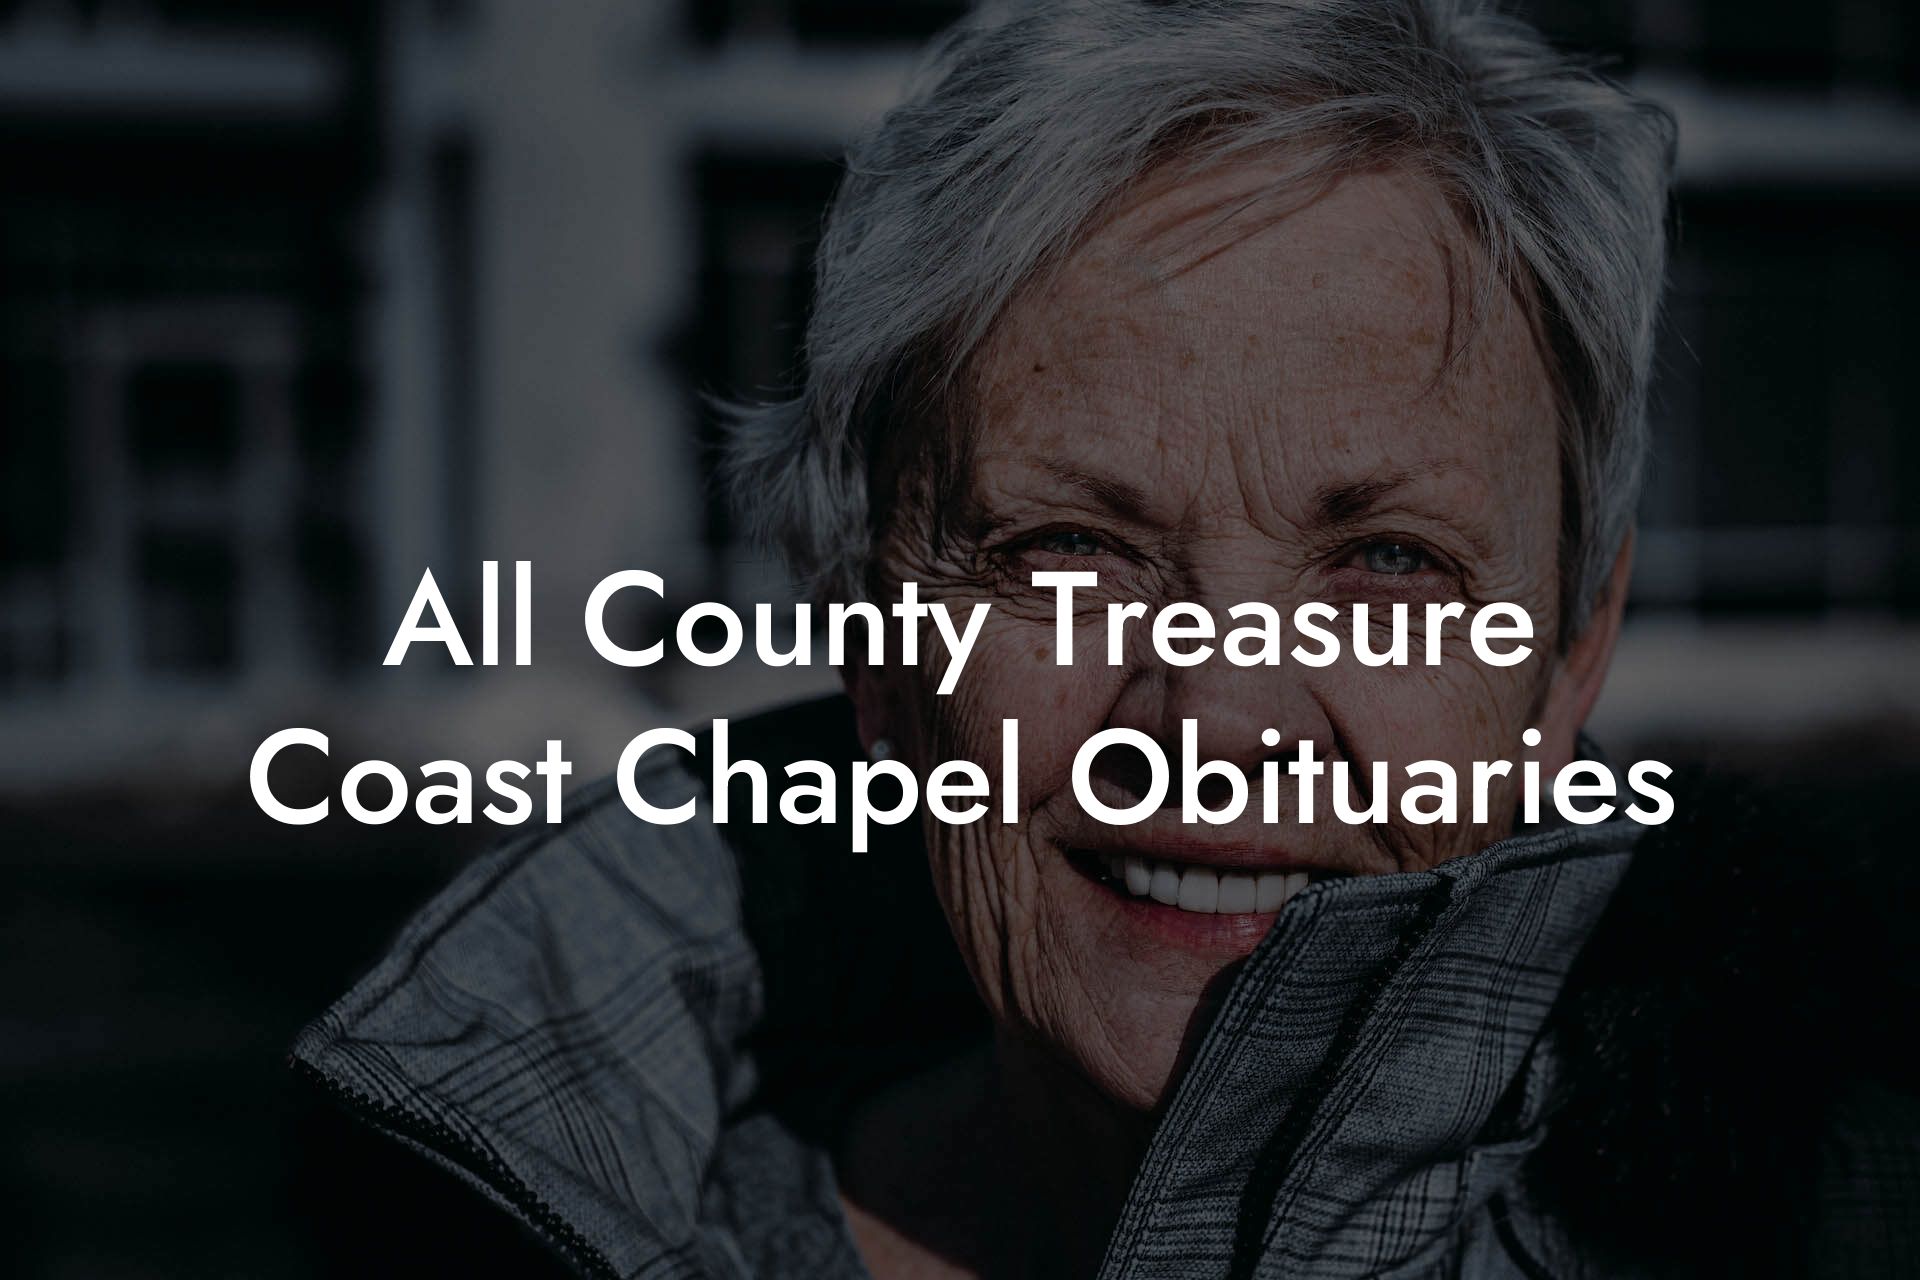 All County Treasure Coast Chapel Obituaries